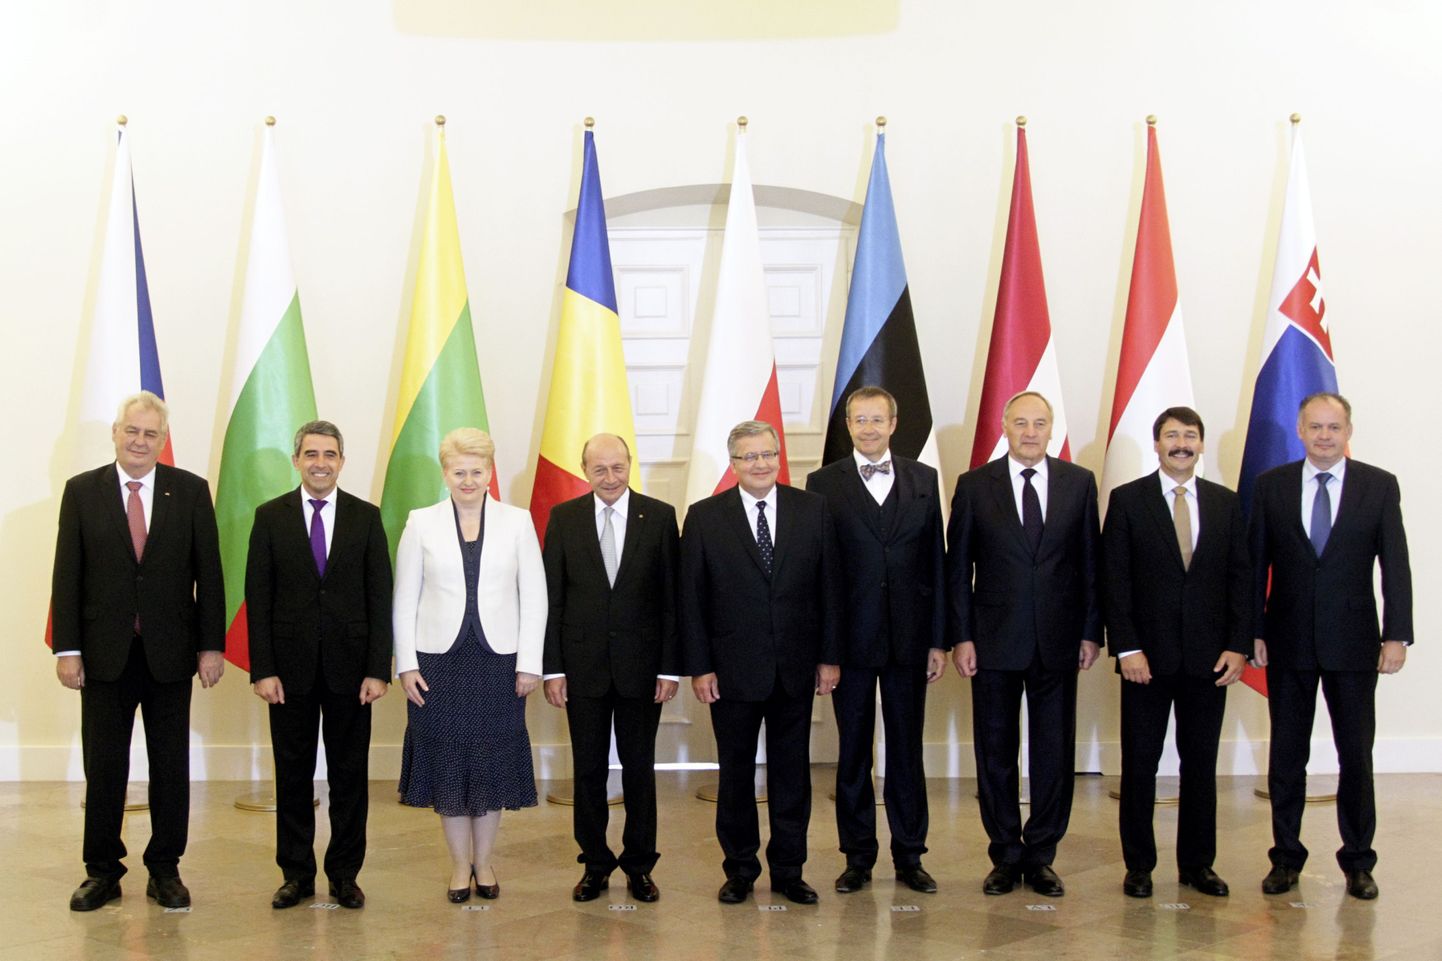 Eesti, Läti, Leedu, Bulgaaria, Rumeenia, Poola, Tšehhi, Slovakkia ja Ungari presidendid täna Varssavis toimunud kohtumisel.